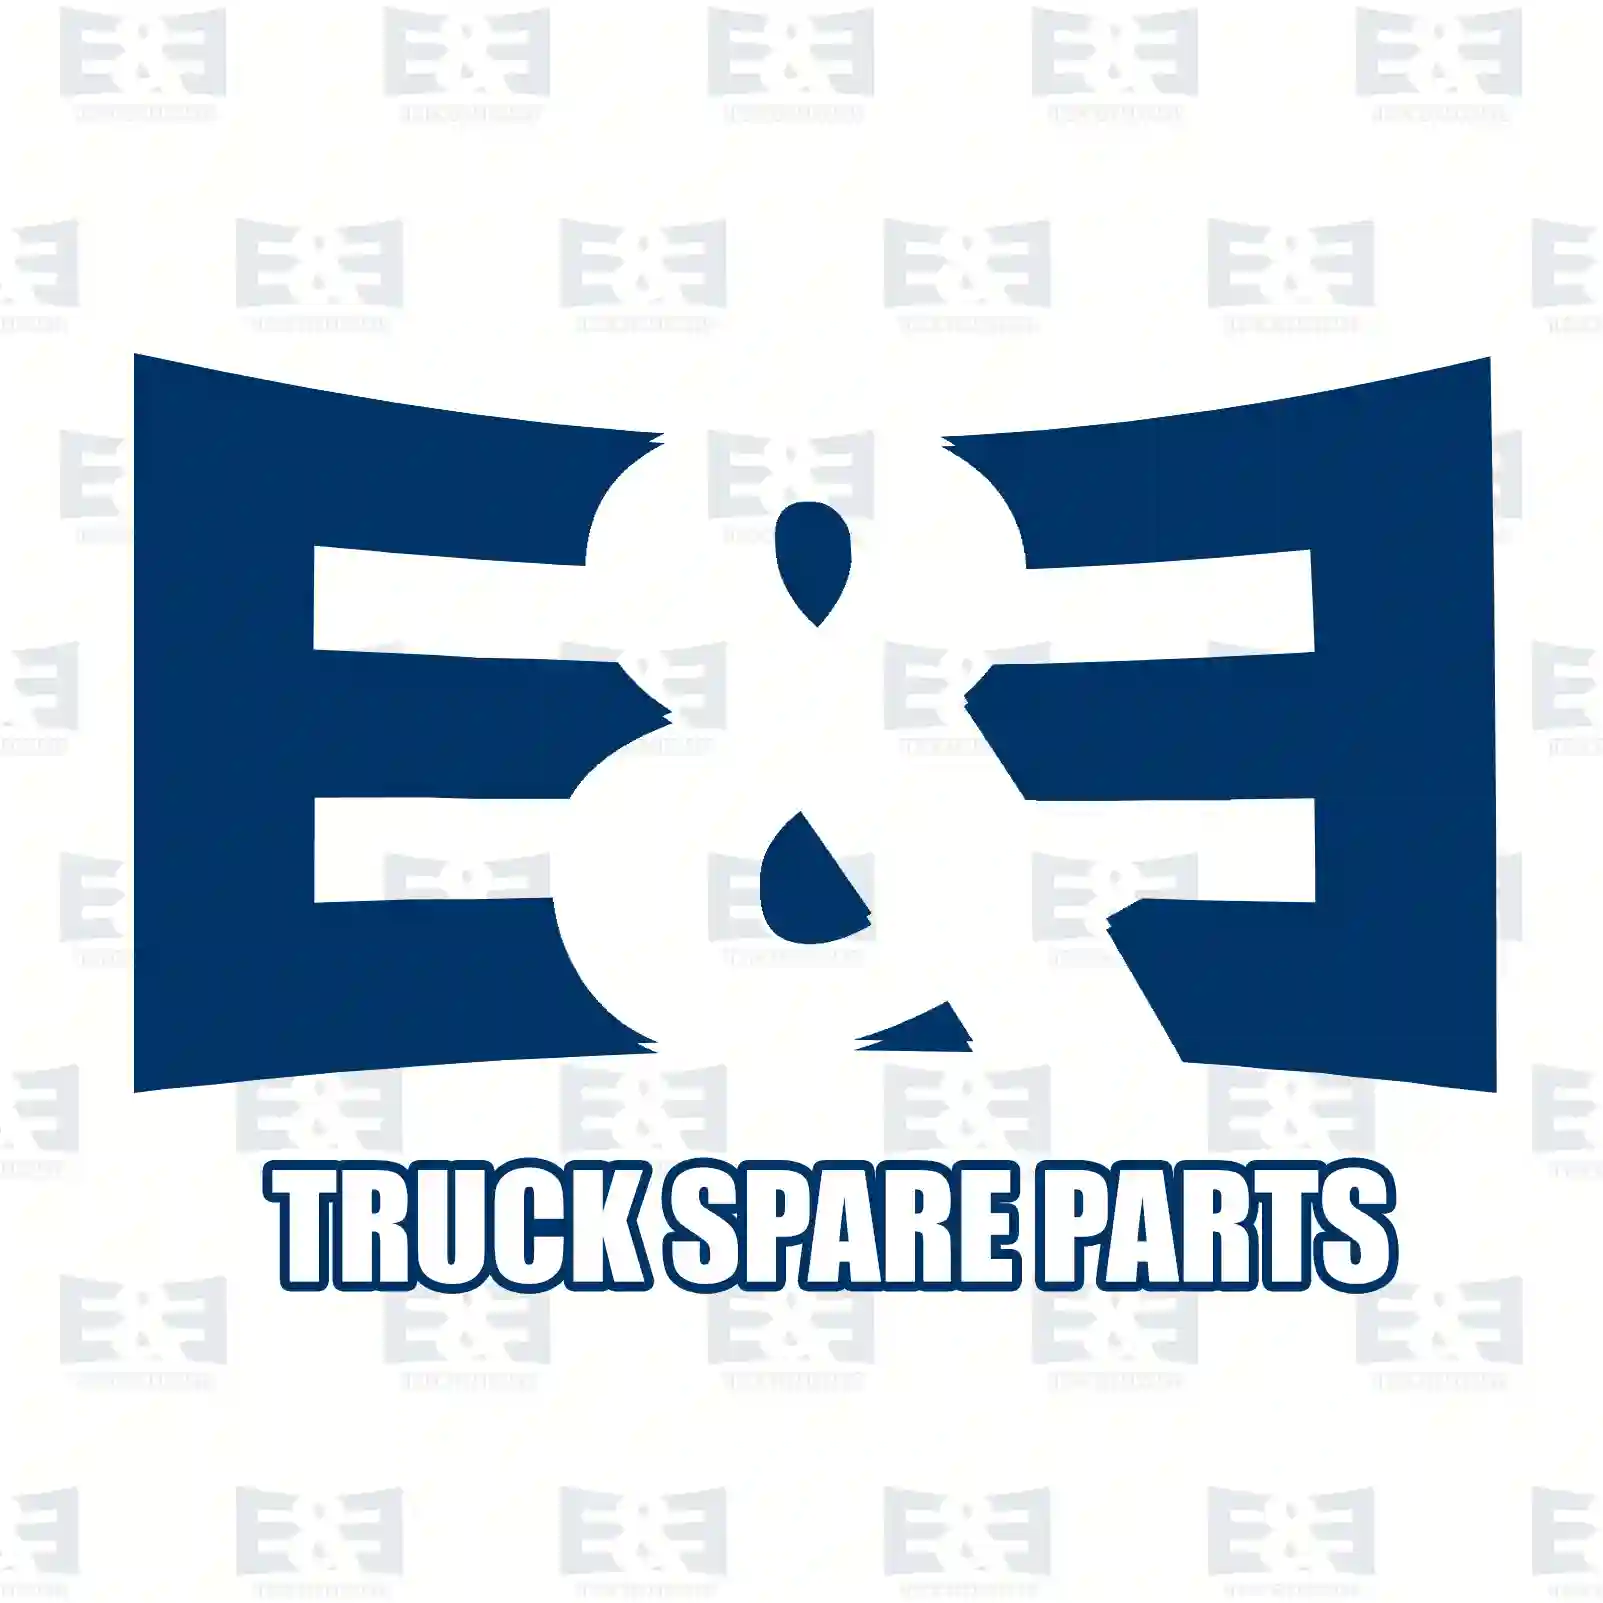 ABS sensor, rear, right, 2E2298920, 9065404217, 9069050901, 2E0927748N, 2E0927748T ||  2E2298920 E&E Truck Spare Parts | Truck Spare Parts, Auotomotive Spare Parts ABS sensor, rear, right, 2E2298920, 9065404217, 9069050901, 2E0927748N, 2E0927748T ||  2E2298920 E&E Truck Spare Parts | Truck Spare Parts, Auotomotive Spare Parts